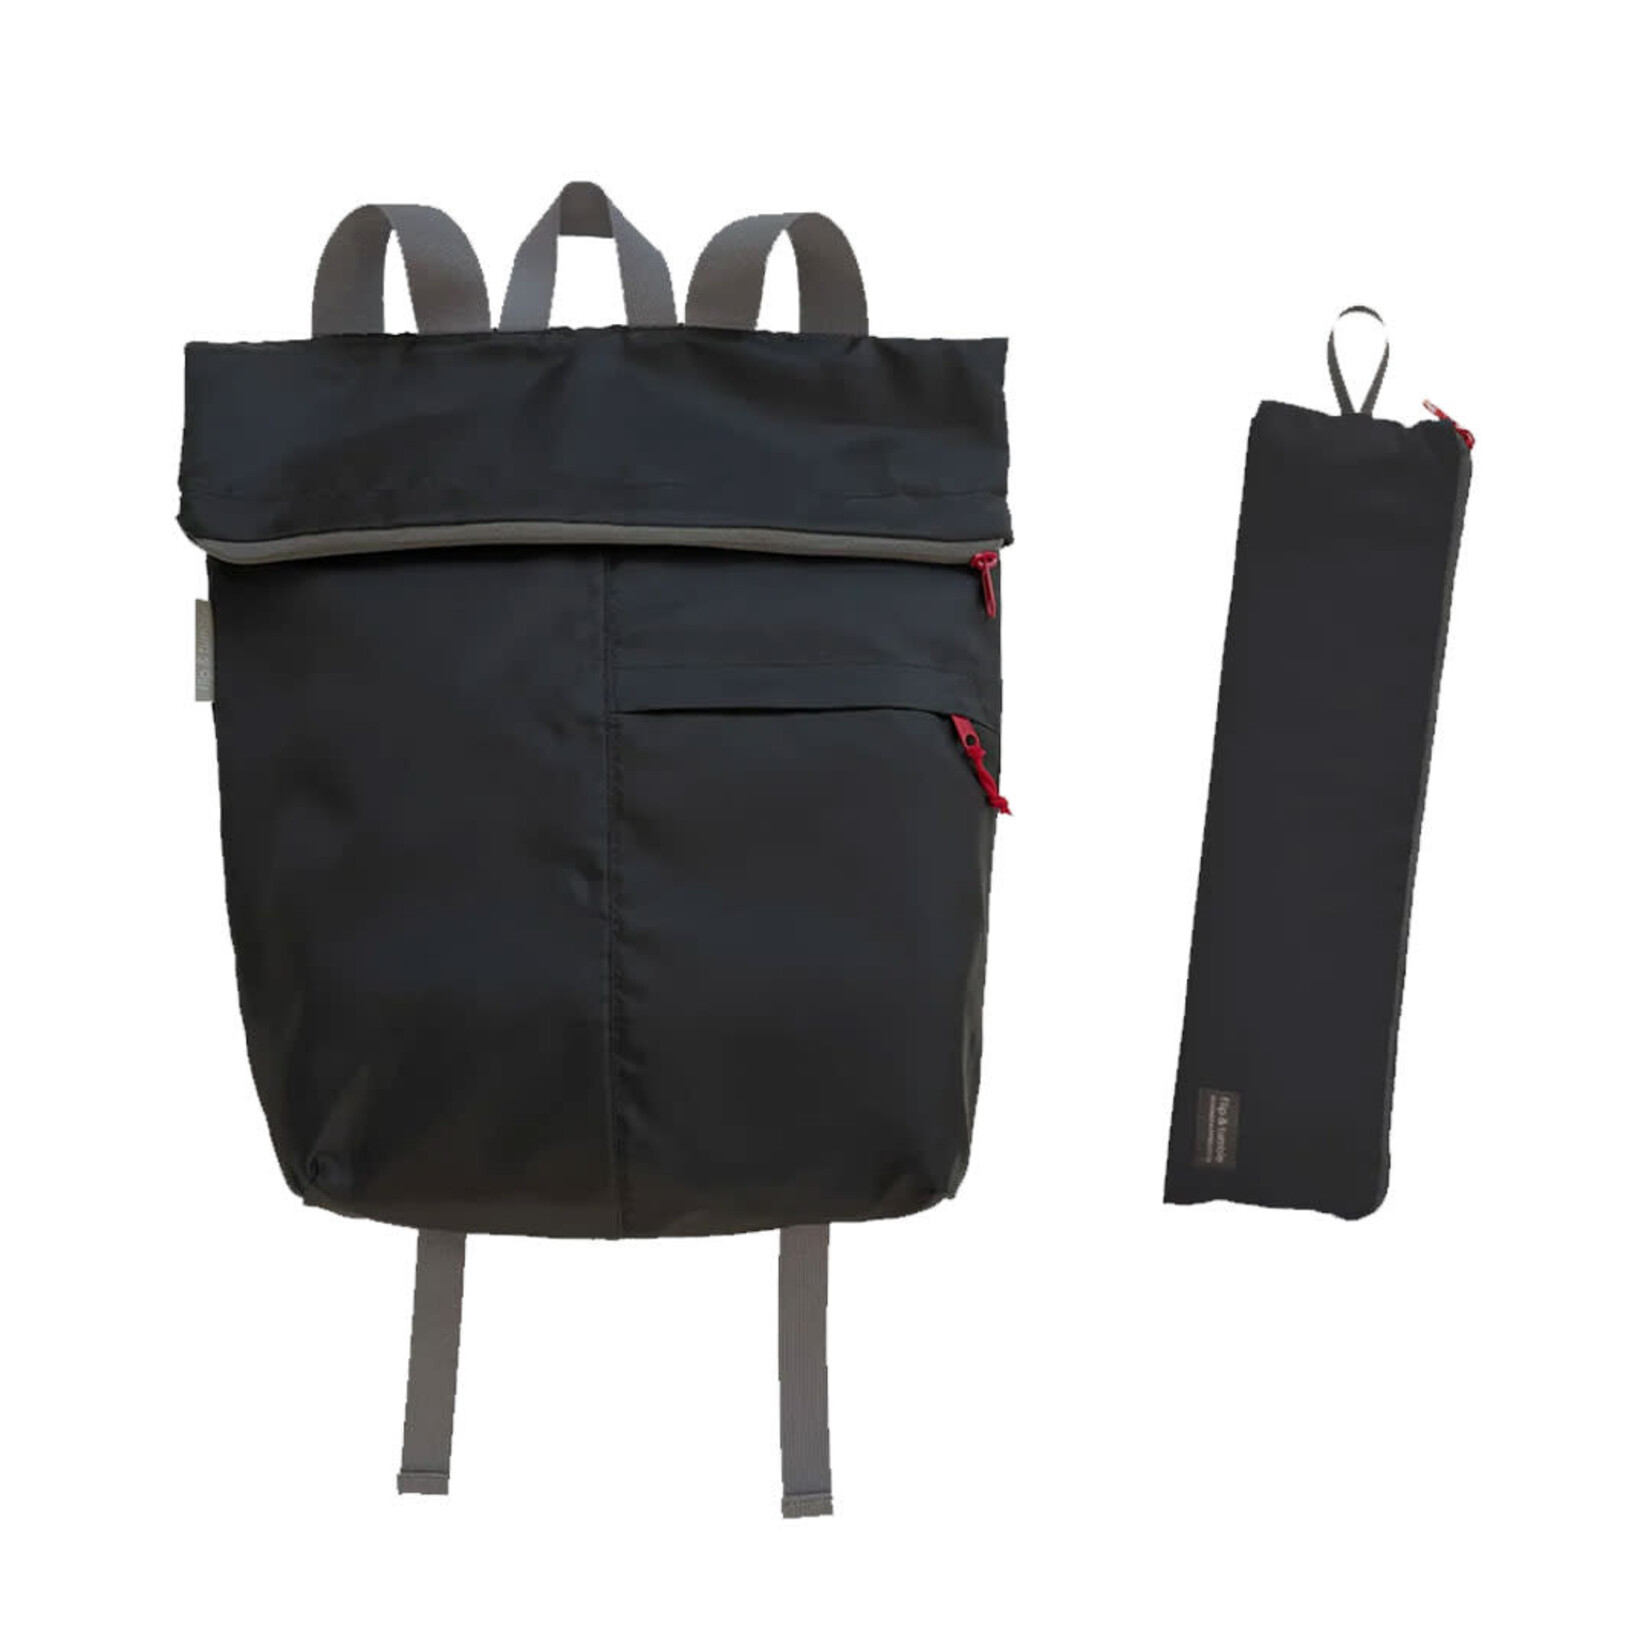 Flip and Tumble Backpack, Black/ Slate